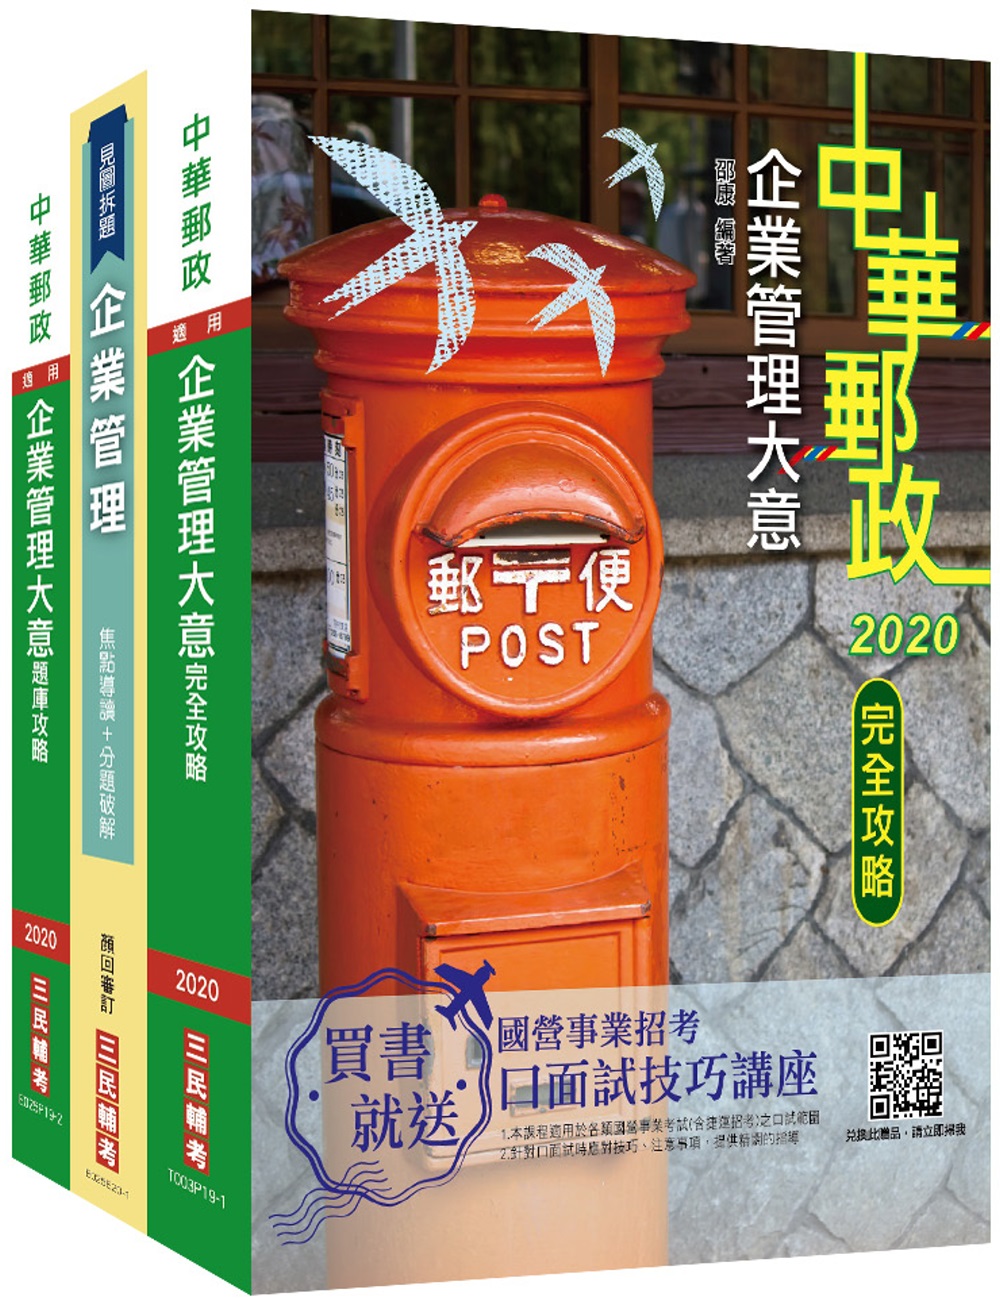 2021郵政(郵局)[內勤人員]企業管理搶分衝刺套書(專業職(二)內勤適用)